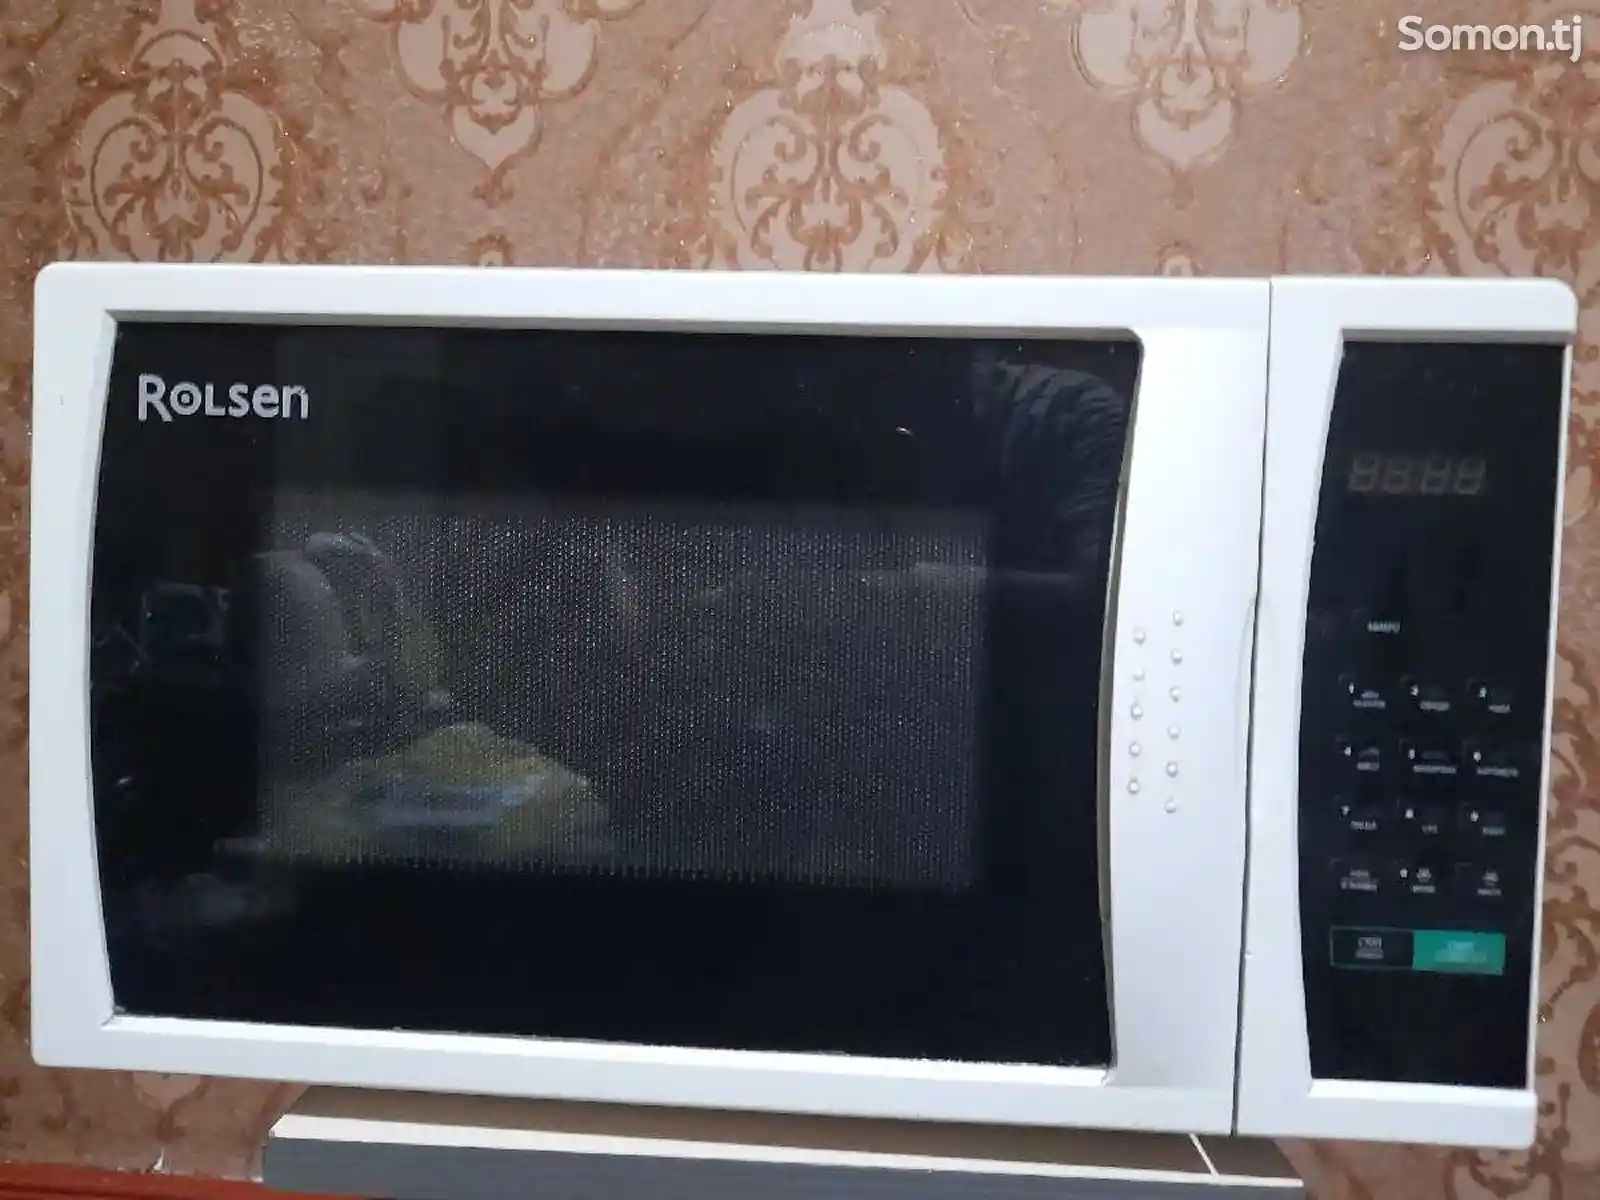 Микроволновая печь - Rolsen-4